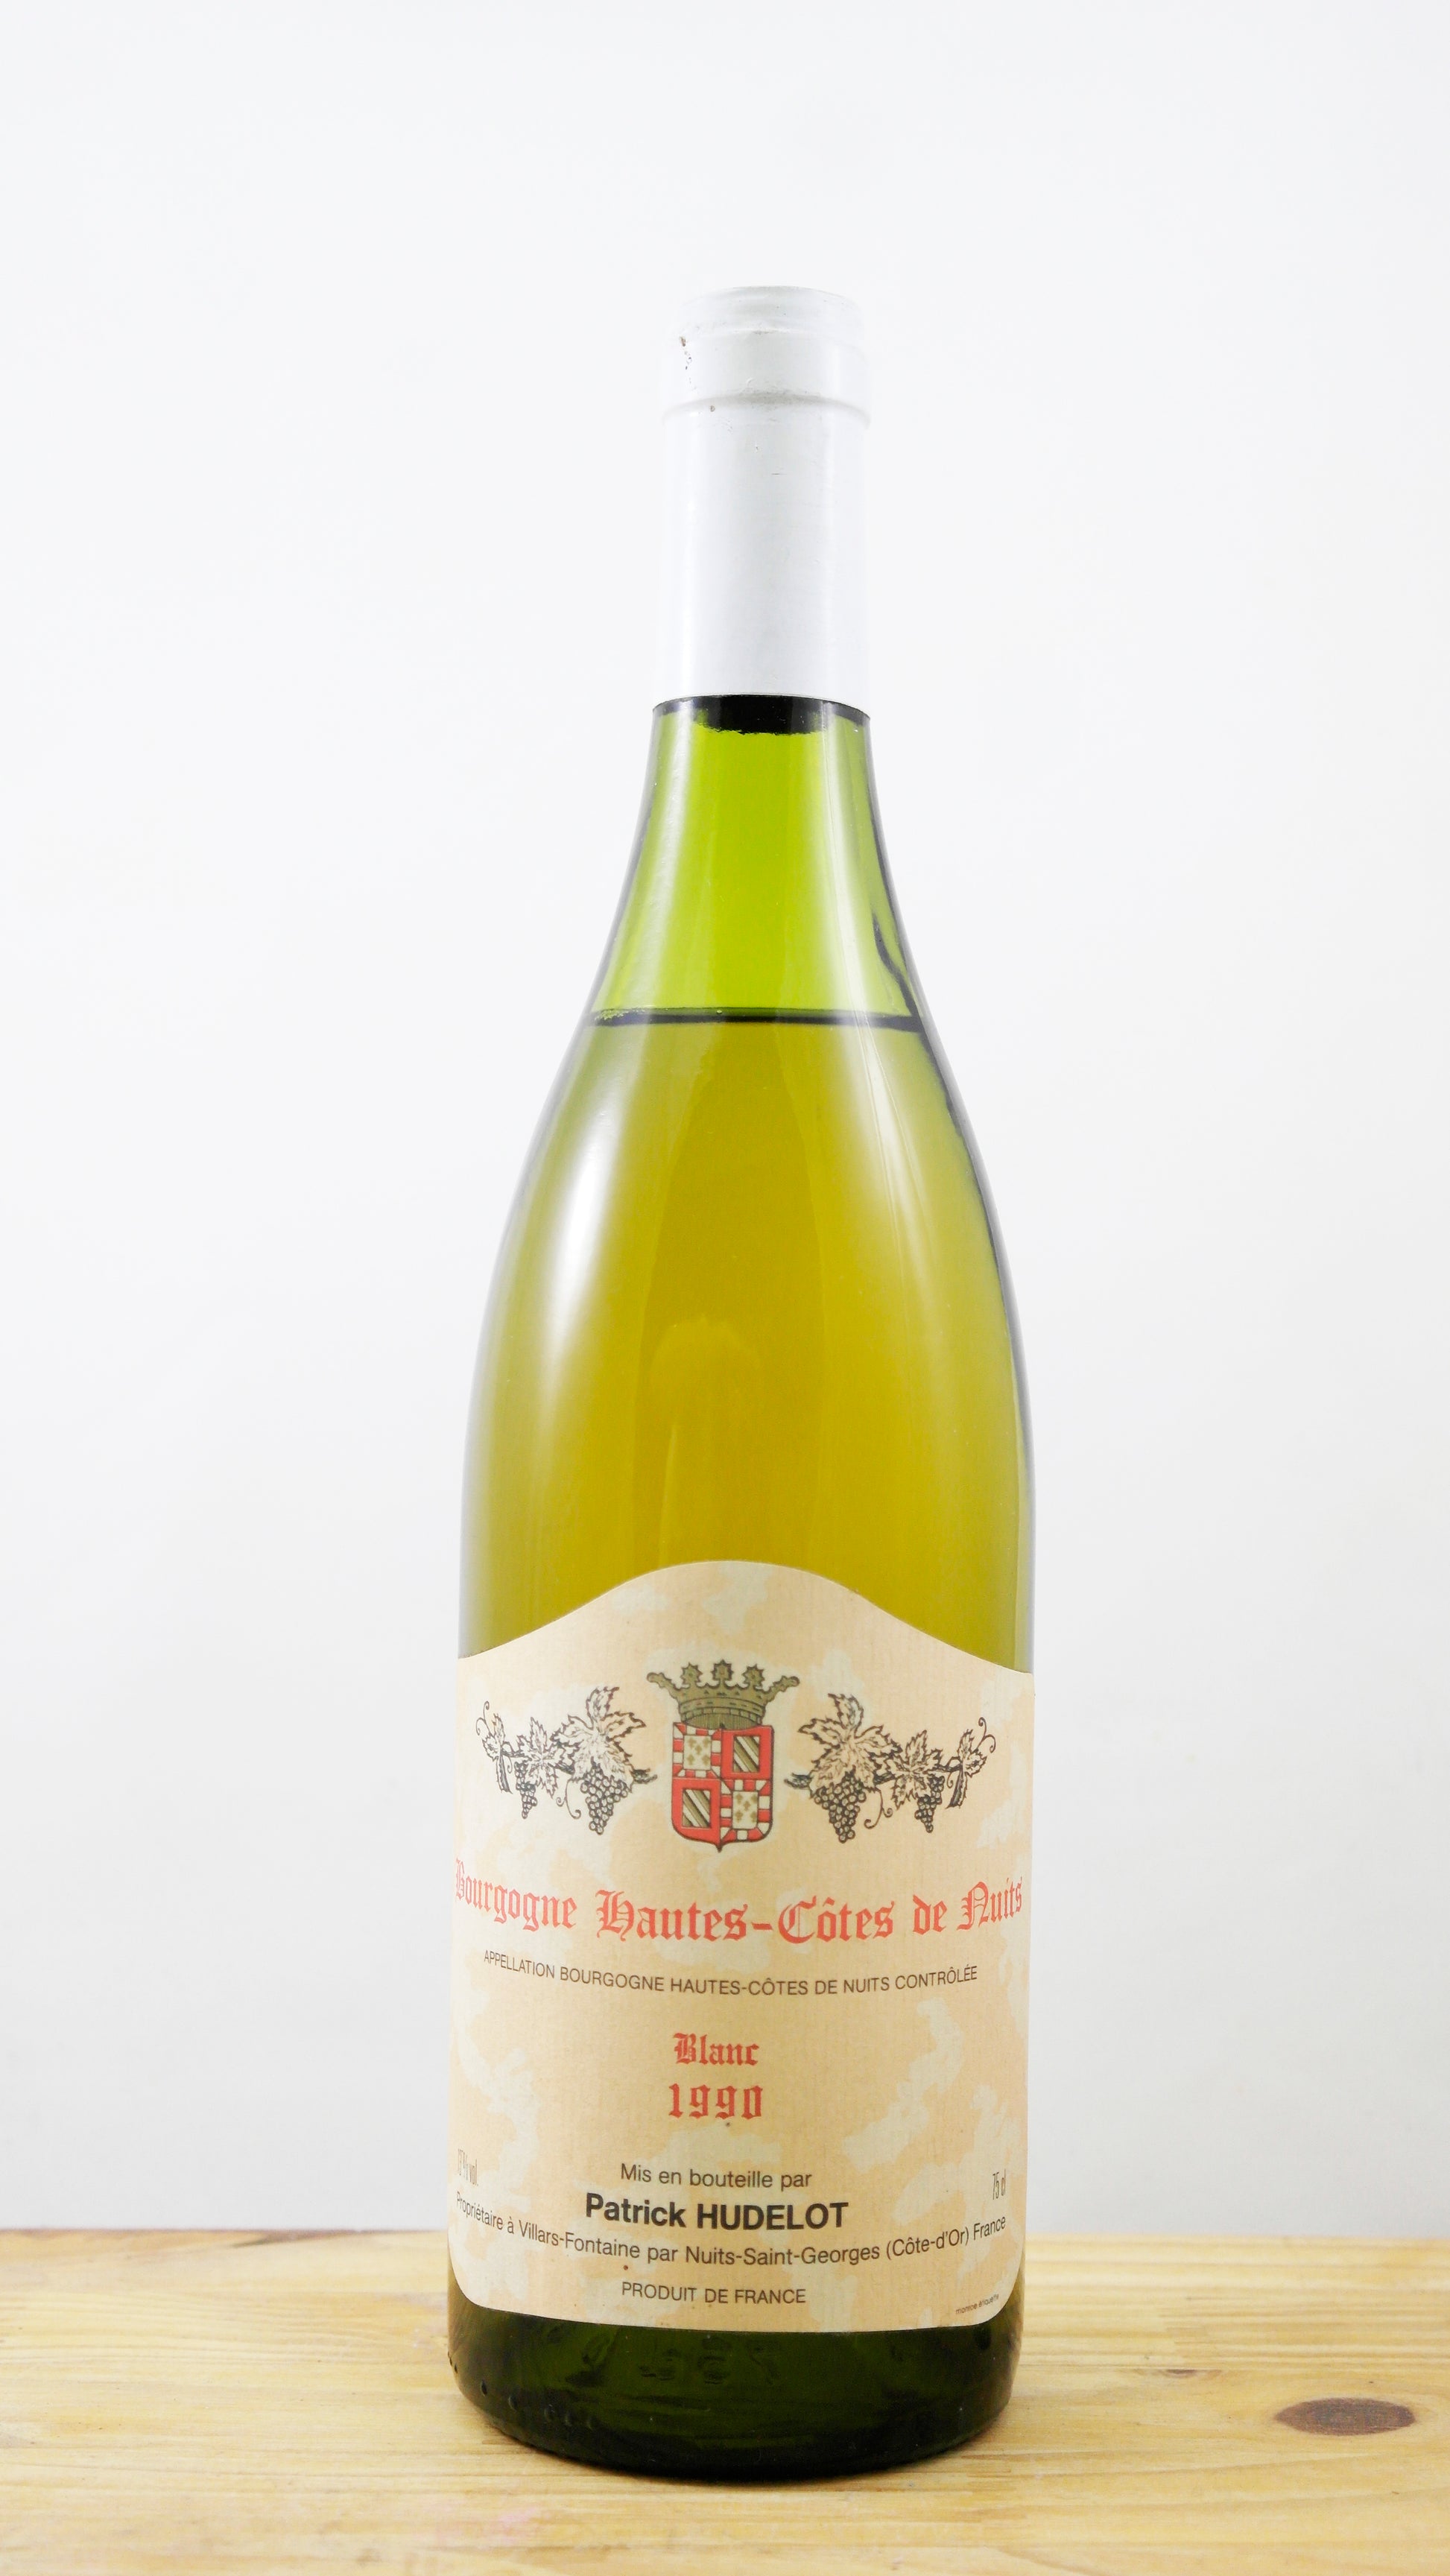 Vin Année 1990 Bourgogne Haute-Côtes de Nuits Patrick Hudelot